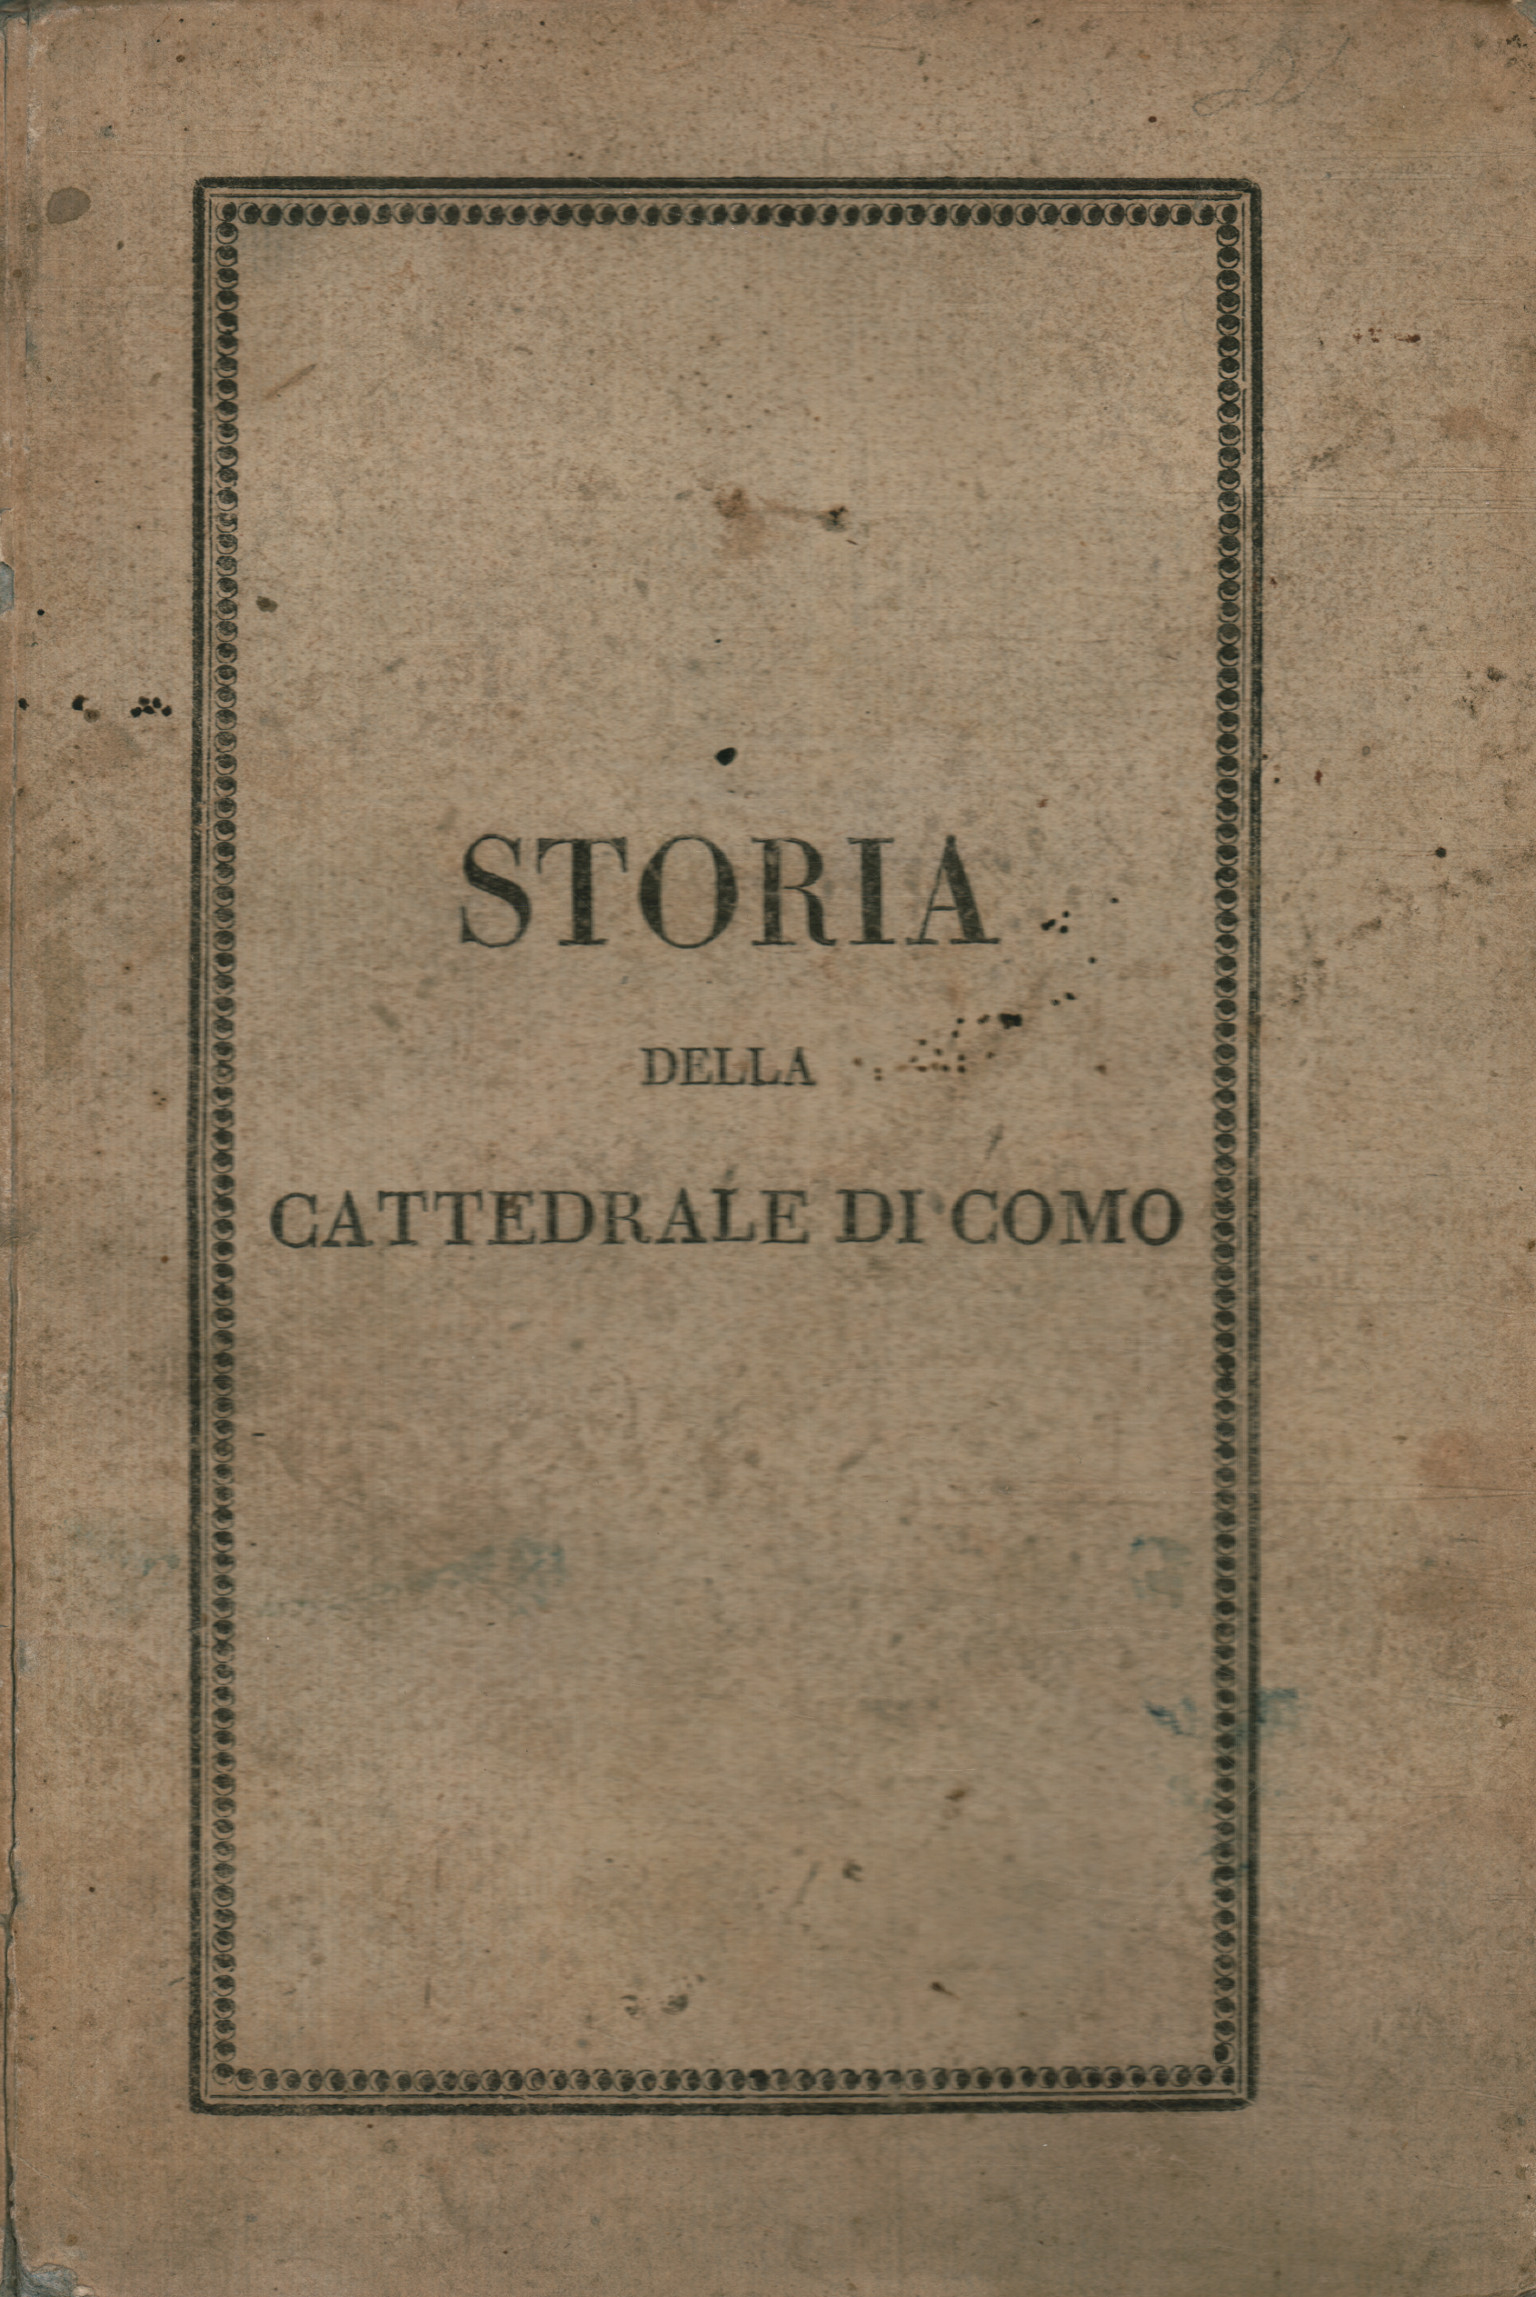 Geschichte der Kathedrale von Como gewidmet